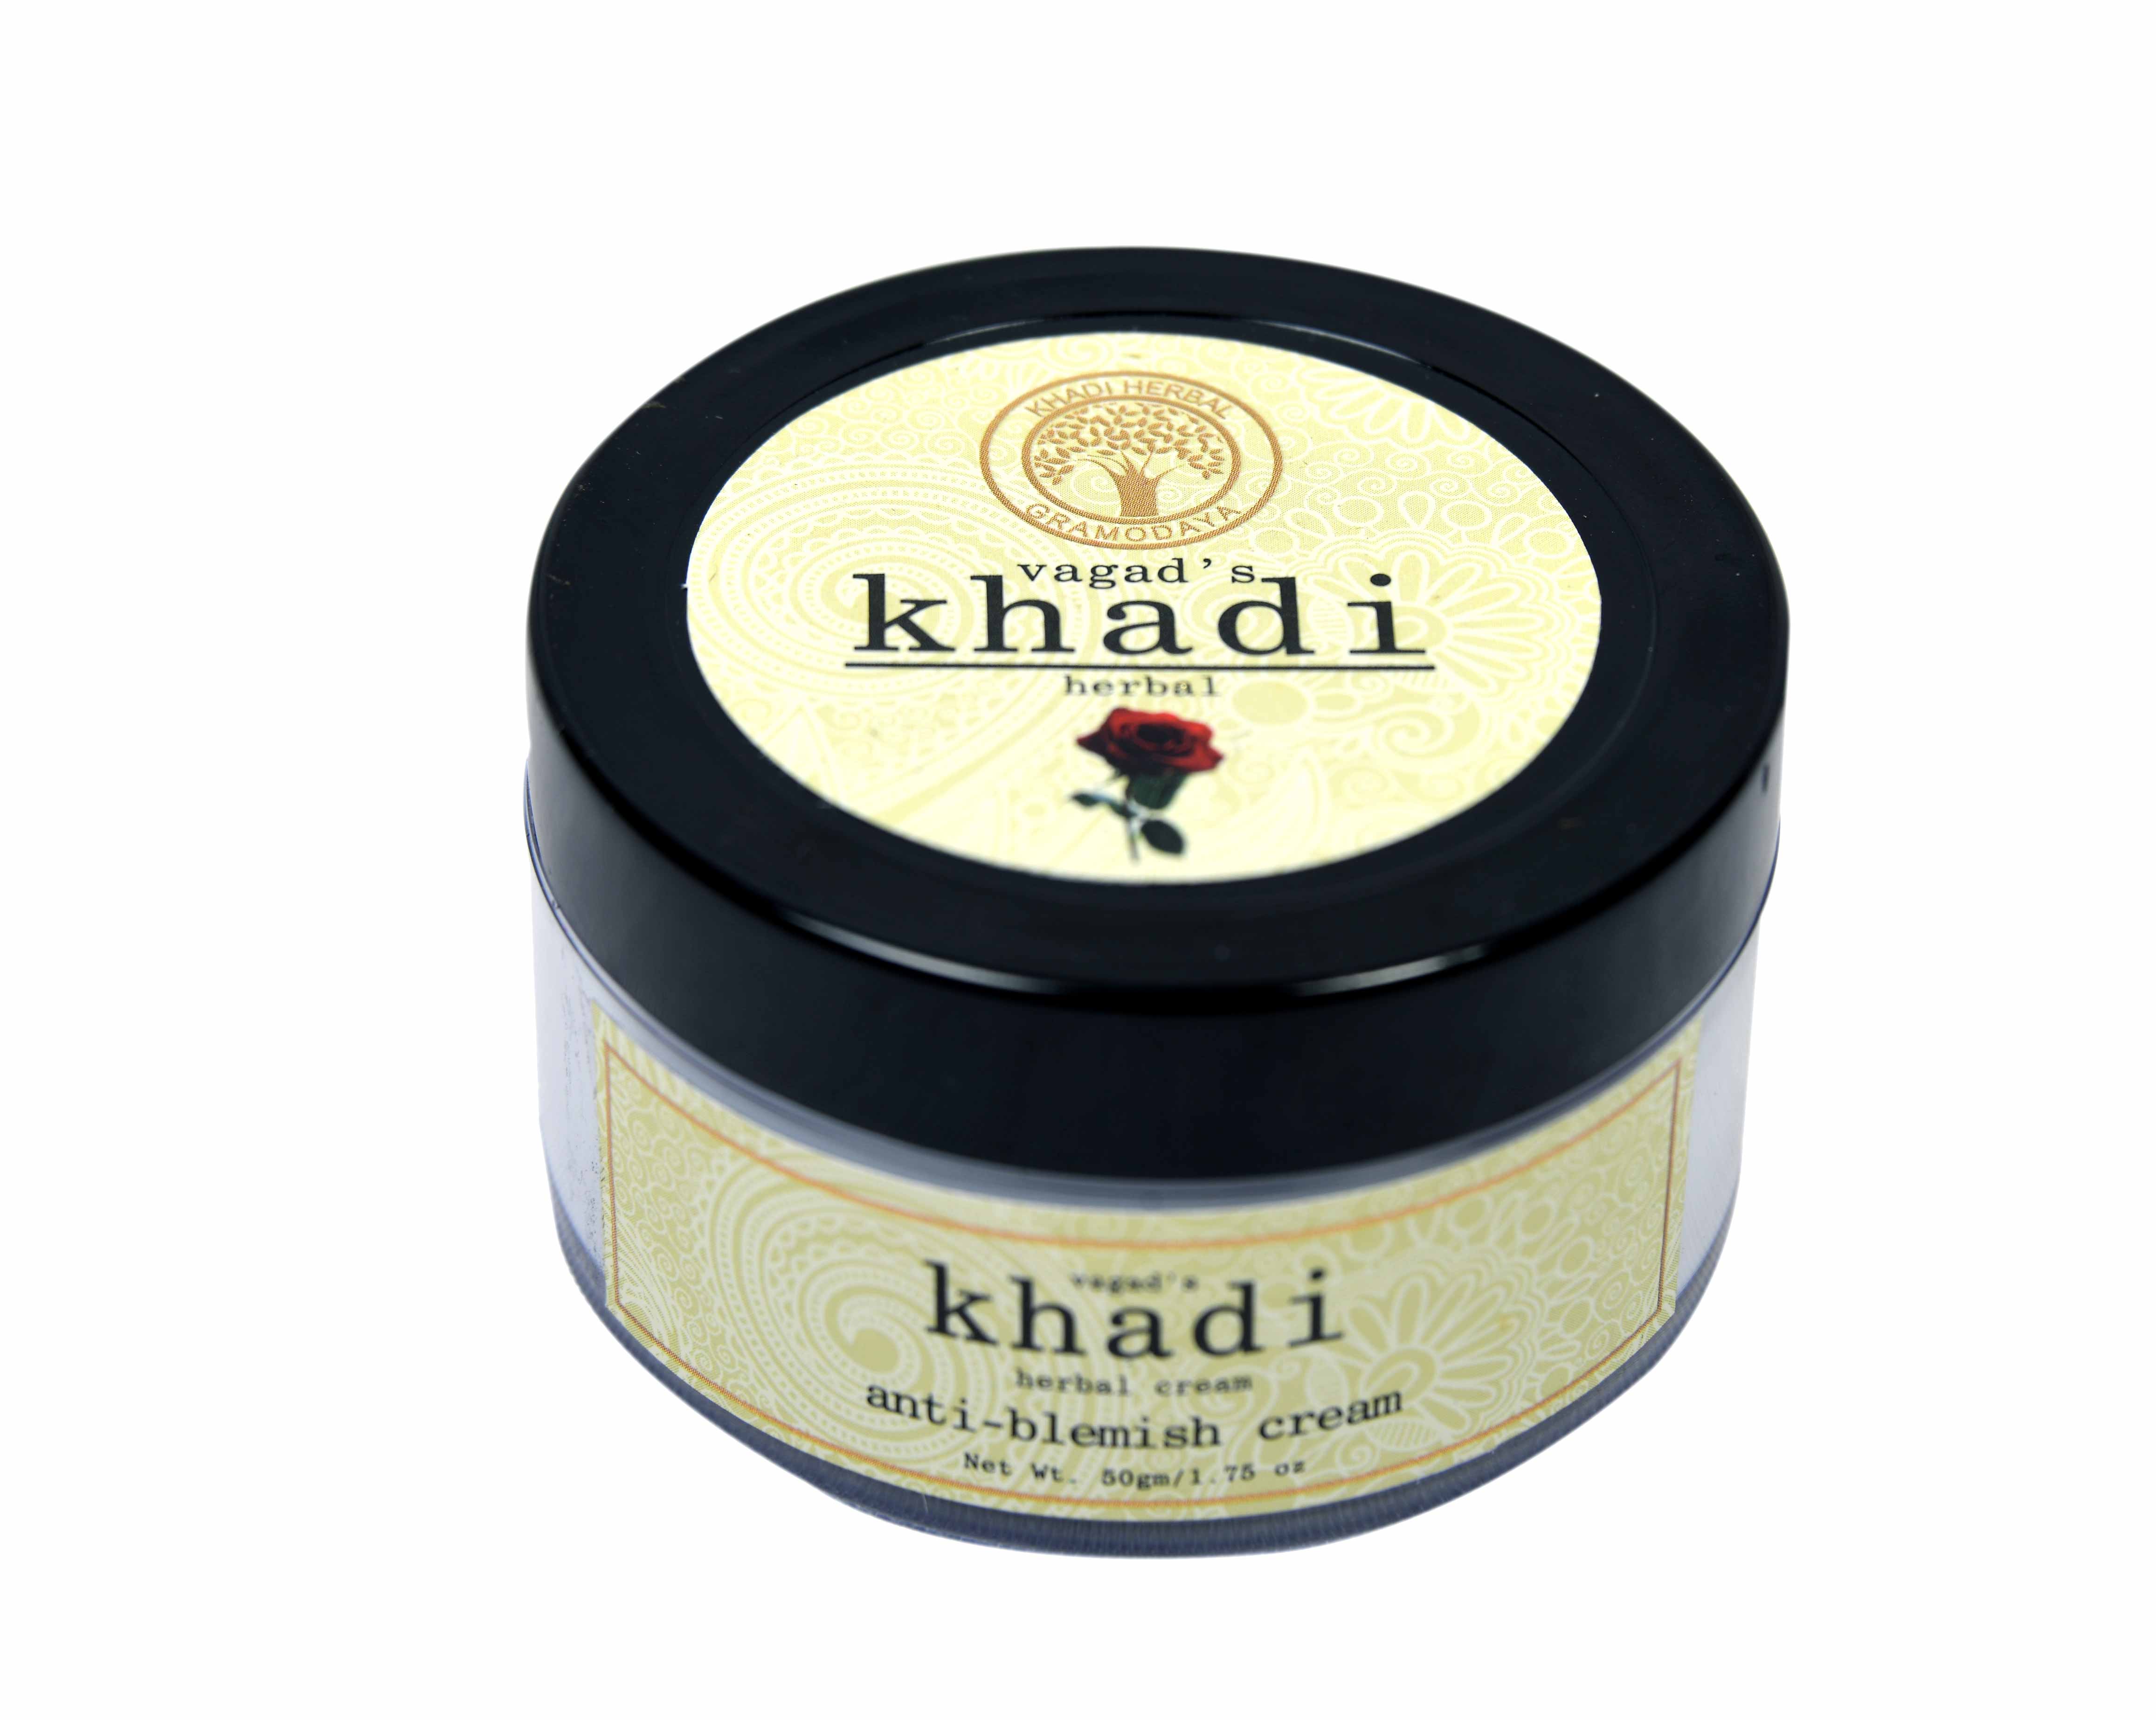 Buy Vagad's Khadi Anti Blemish Cream at Best Price Online